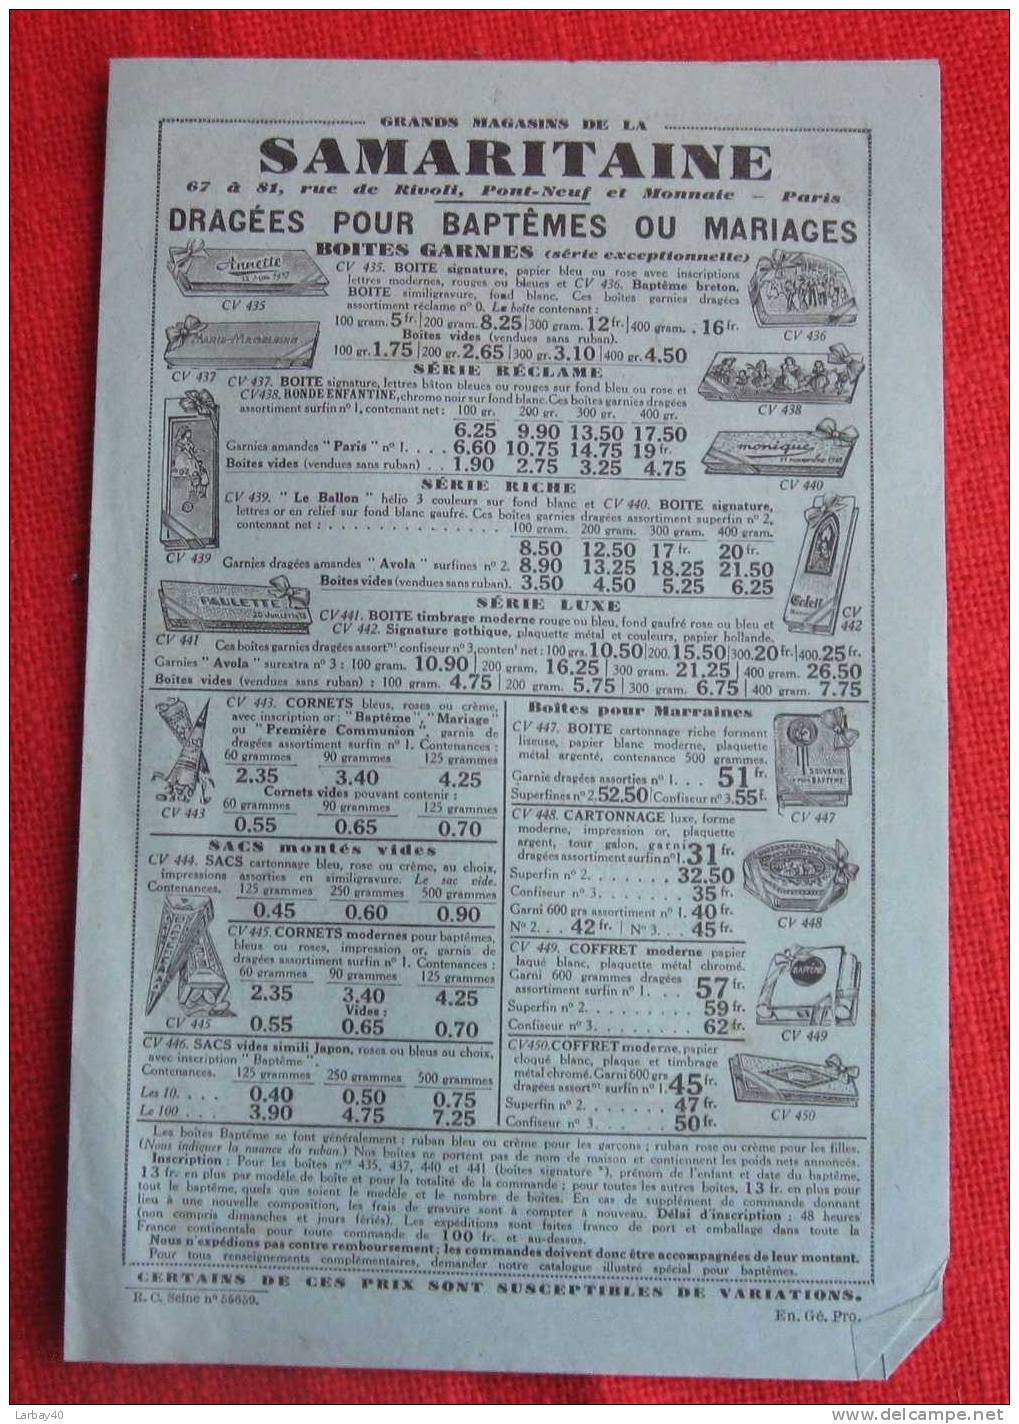 Samaritaine Dragees Pour Baptemes Ou Mariage - 1938 - Publicités